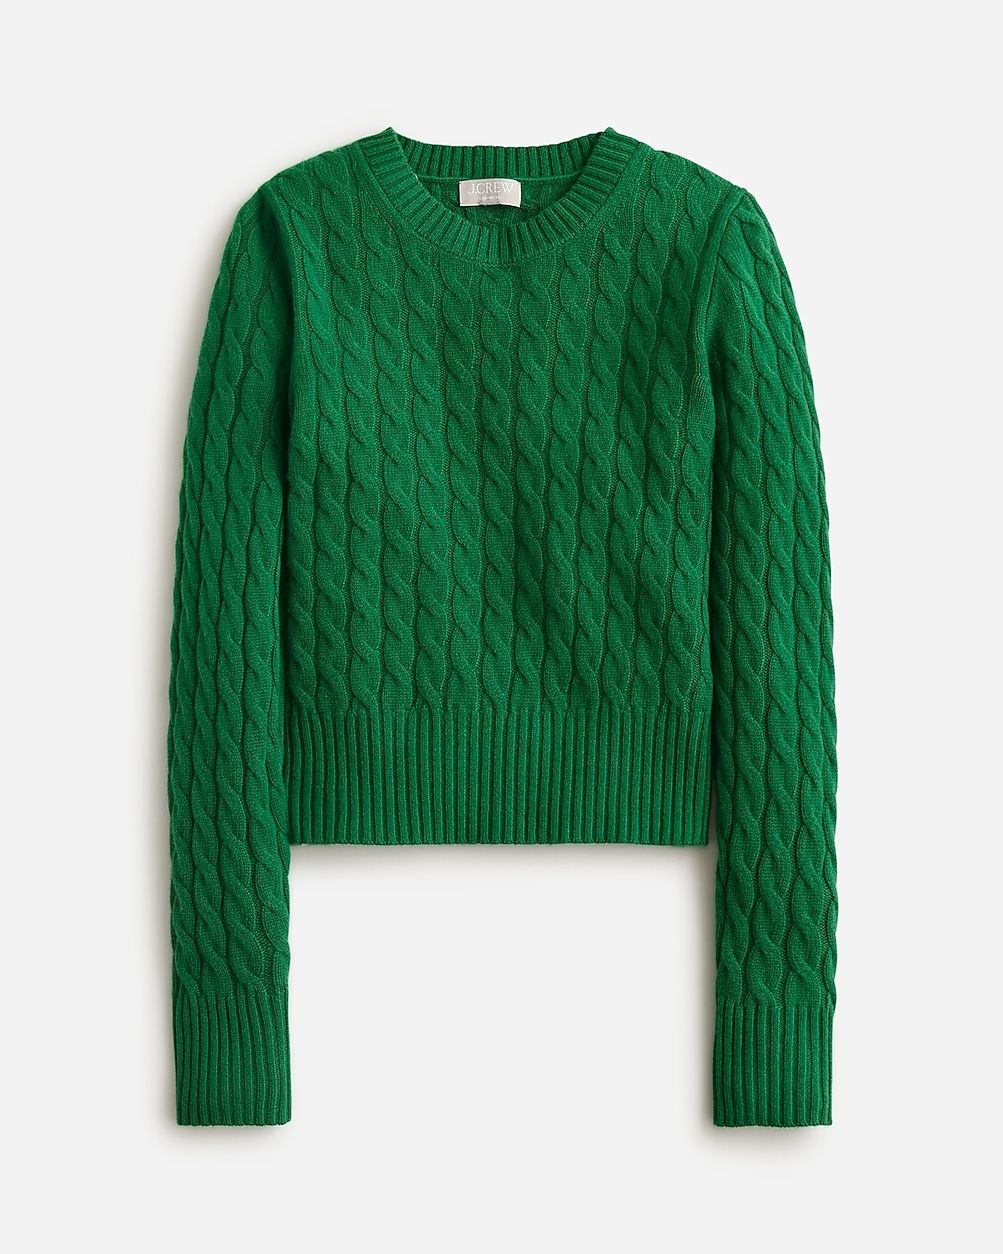 Cashmere shrunken cable-knit crewneck sweater | J.Crew US